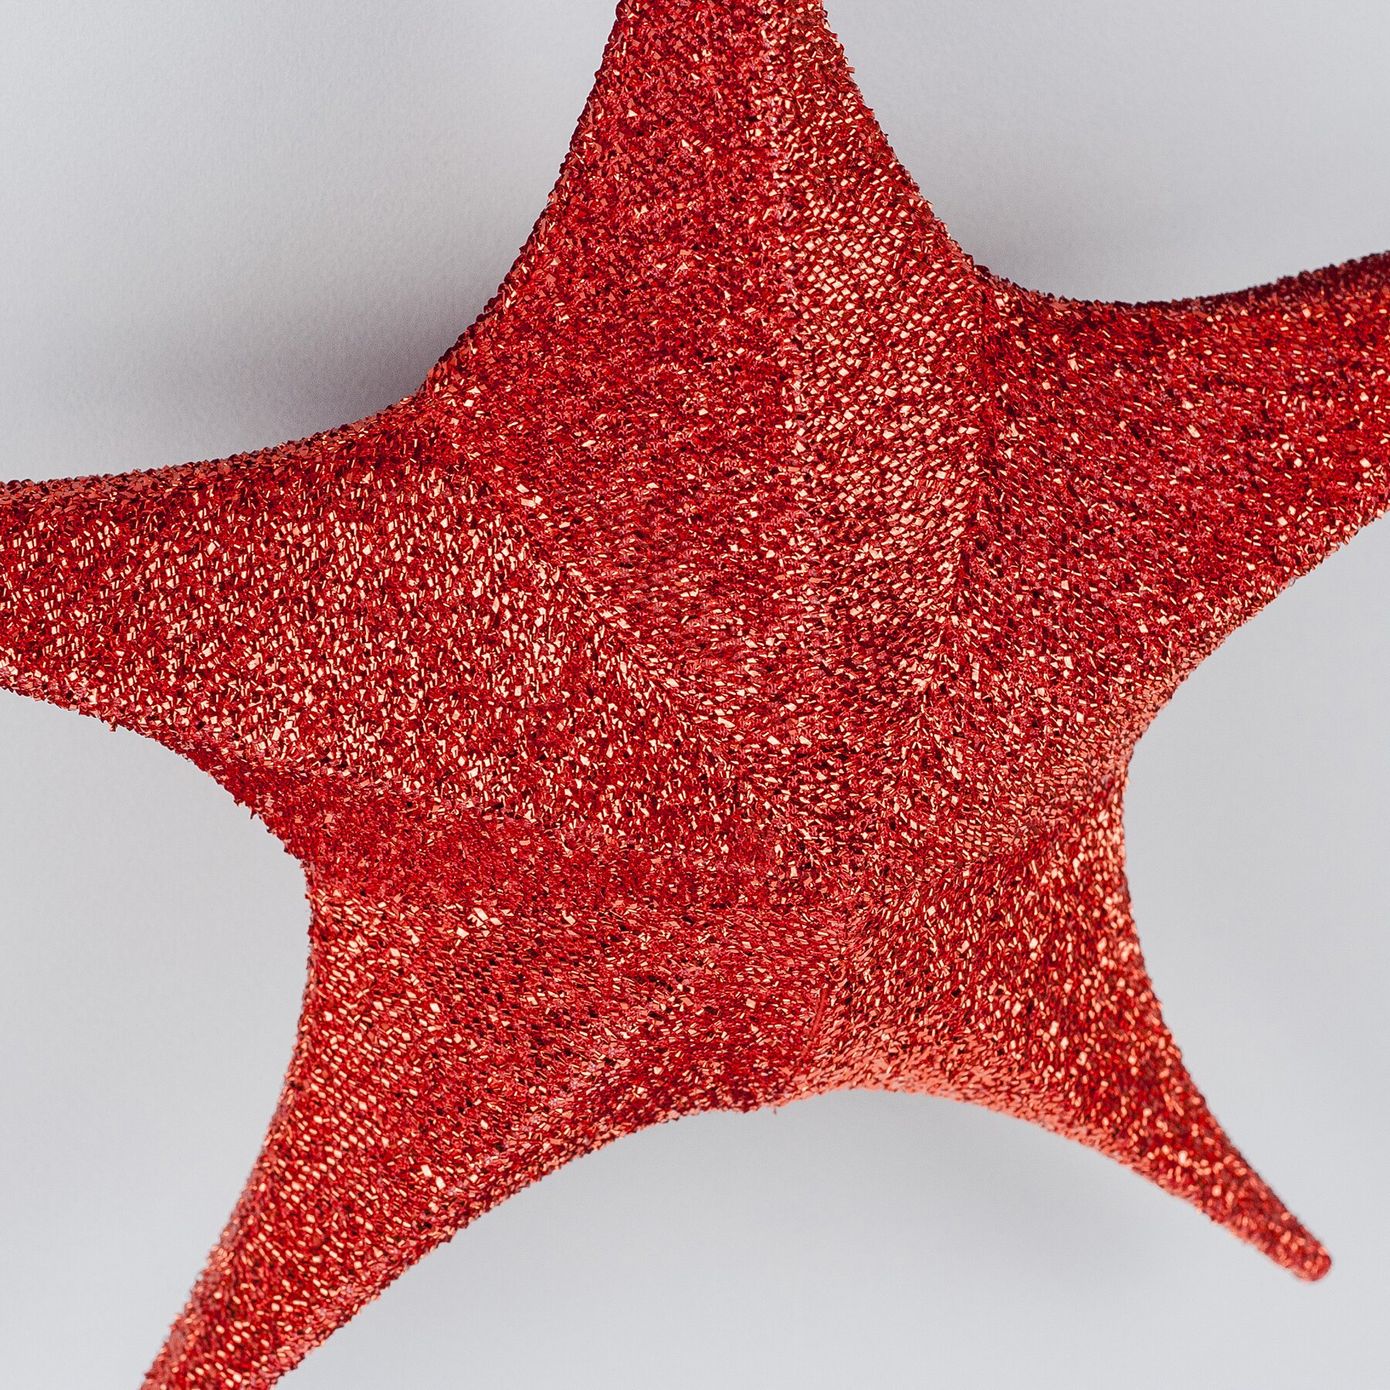 Звезда подвесная для декора из ткани, красная, 80 см